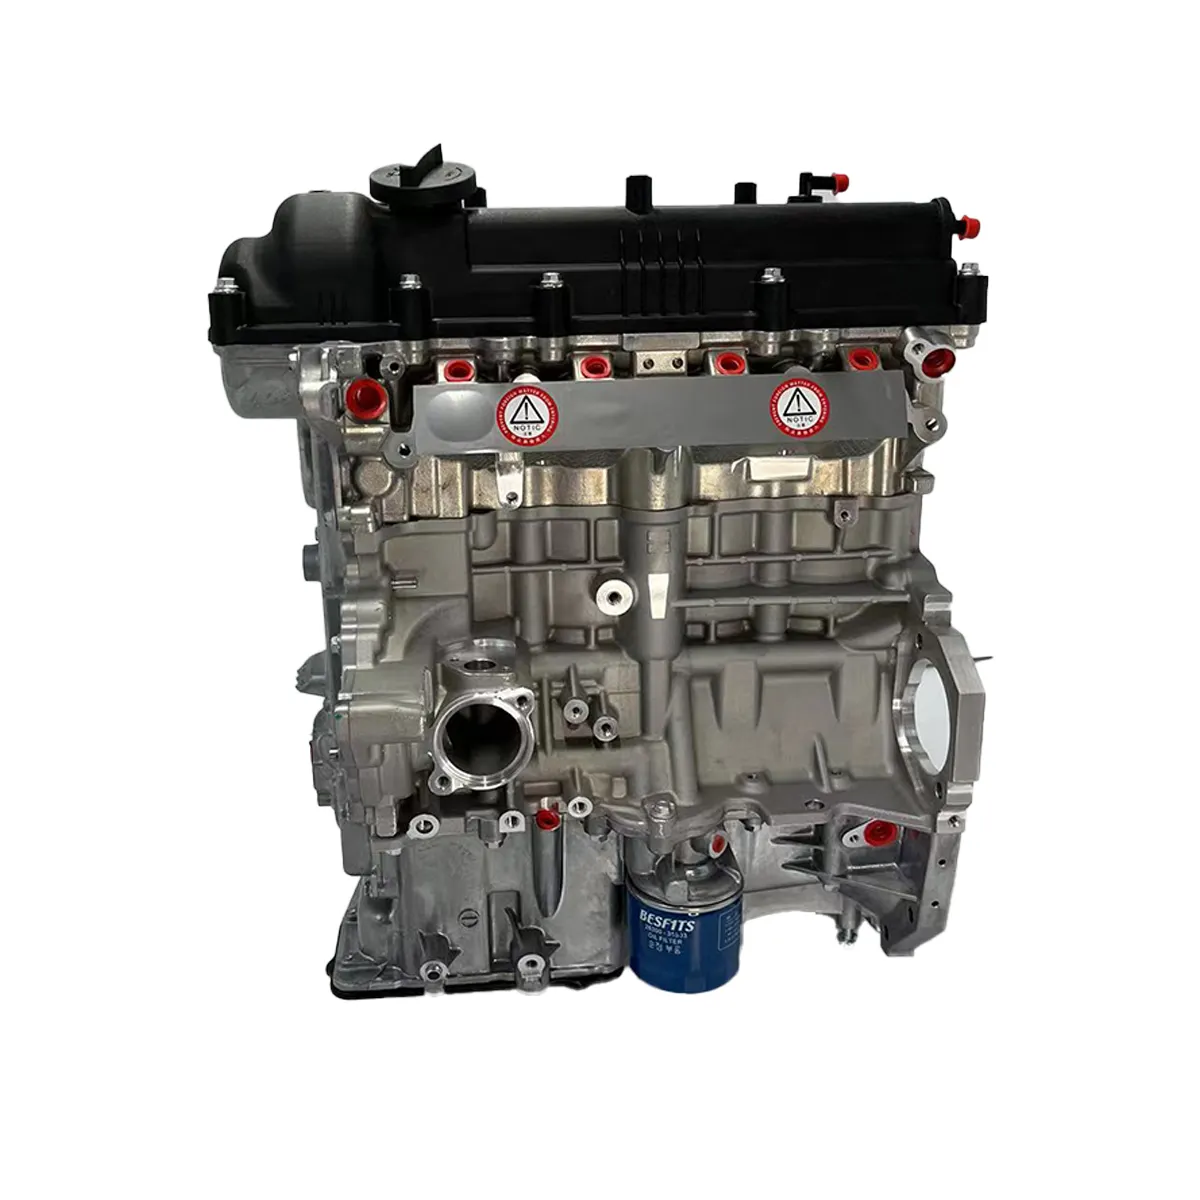 Motore Auto 2016 motore originale Hyundai Accent motore 1.6 G4FG Auto sistemi di assemblaggio veicolo motore 1.6 benzina